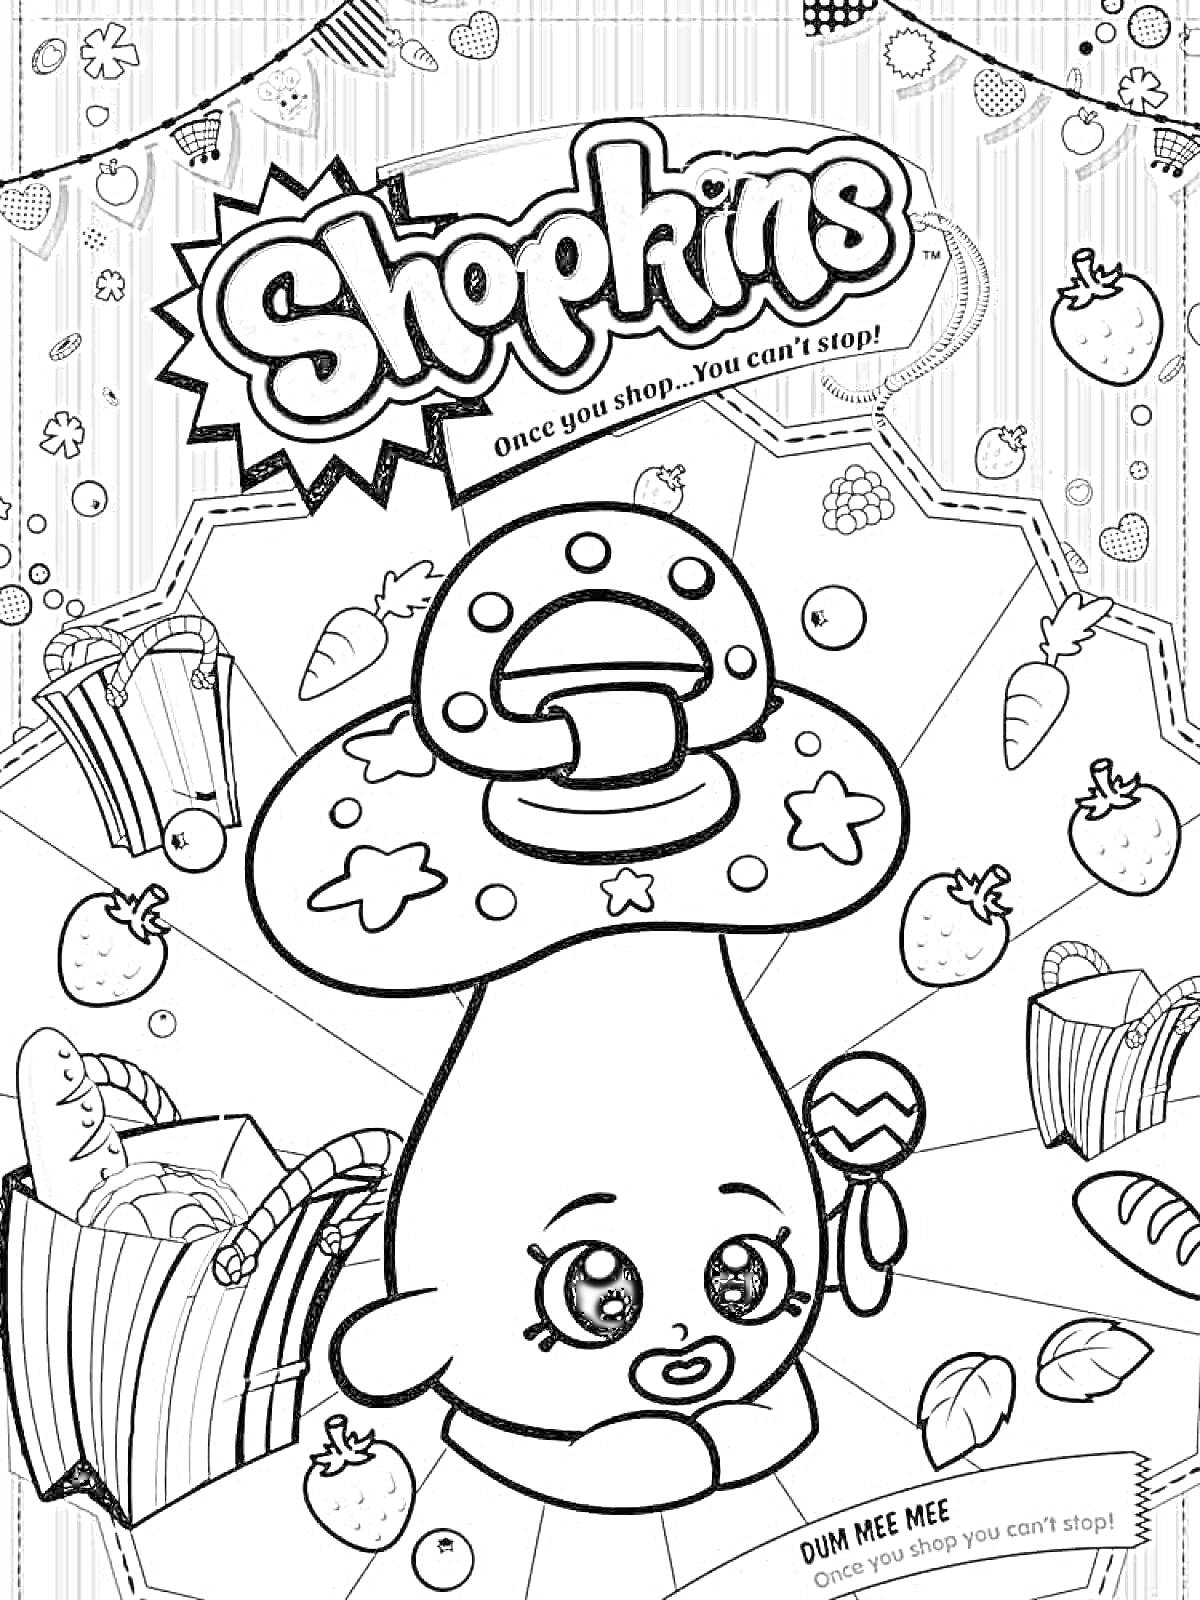 Шопкинс с изображением гриба и множеством фруктов и сладостей